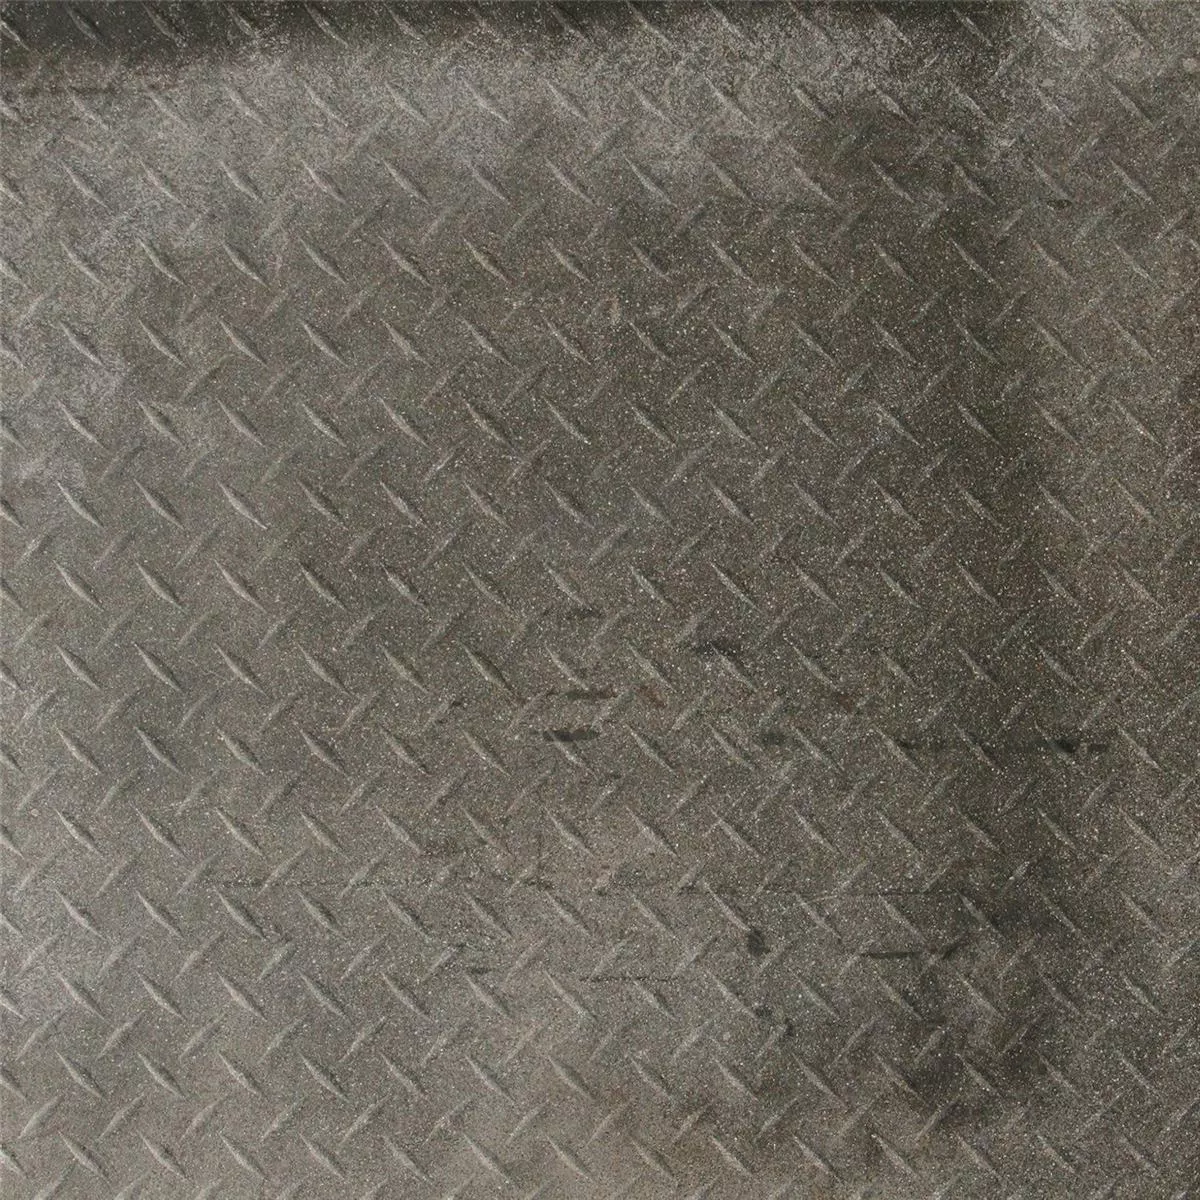 Πλακάκια Δαπέδου Casablanca Ανθρακίτης Ουσία 60x60cm